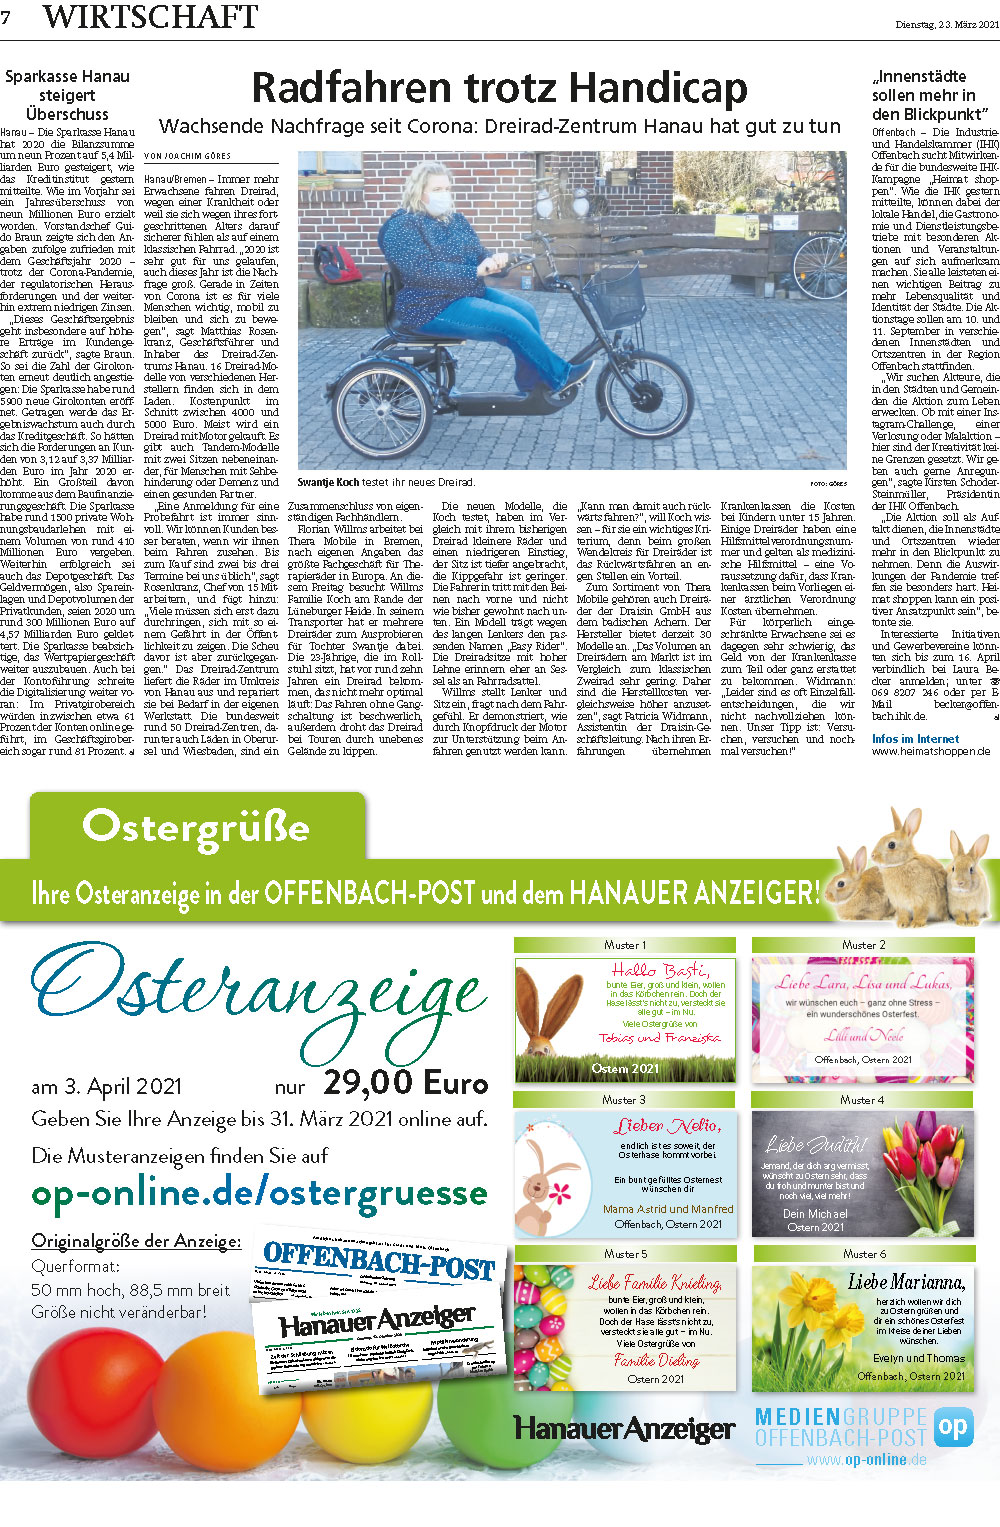 Hanauer Zeitung